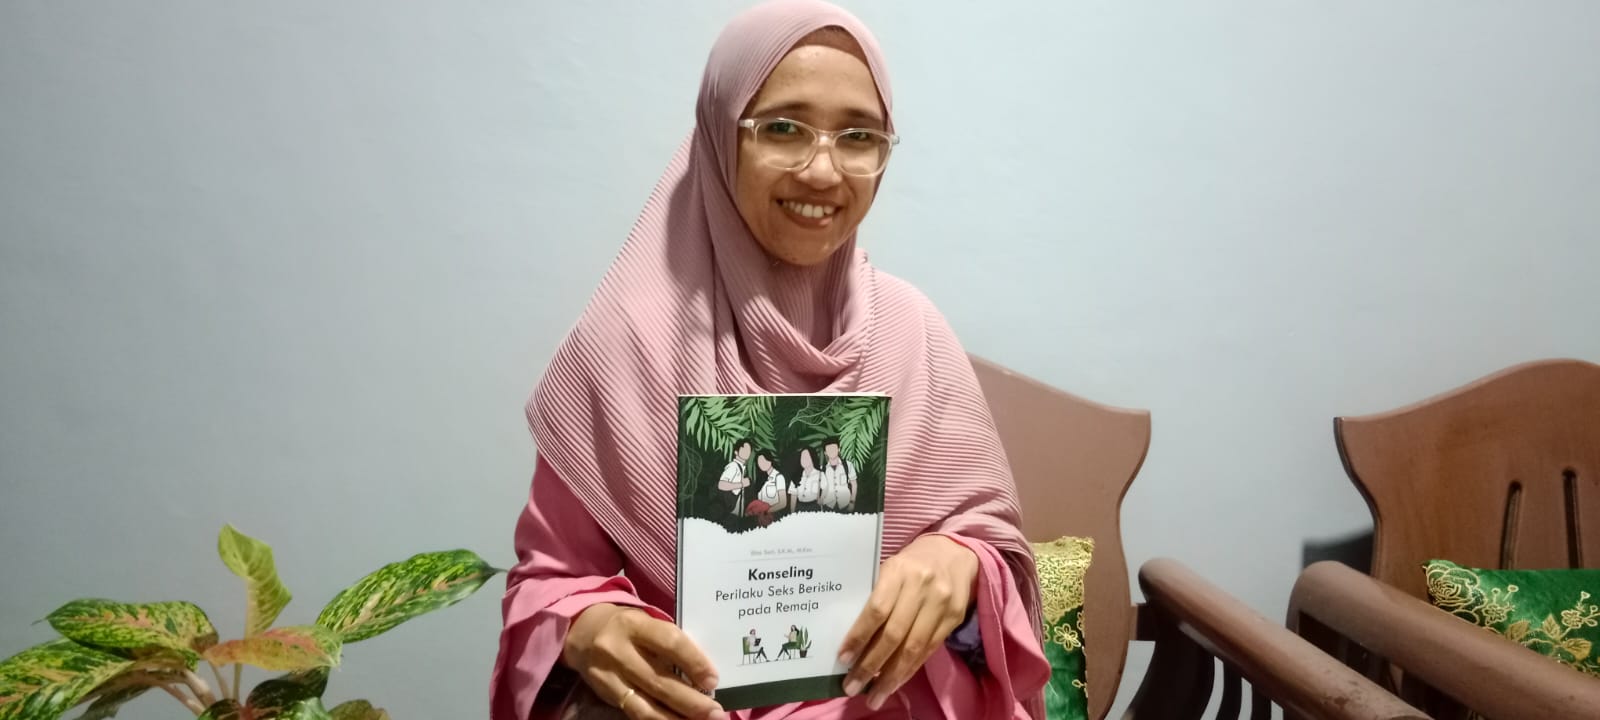 Buku Konseling Perilaku Seks Berisiko pada Remaja, Elna Sari: Seks Tak Seharusnya Pra Nikah